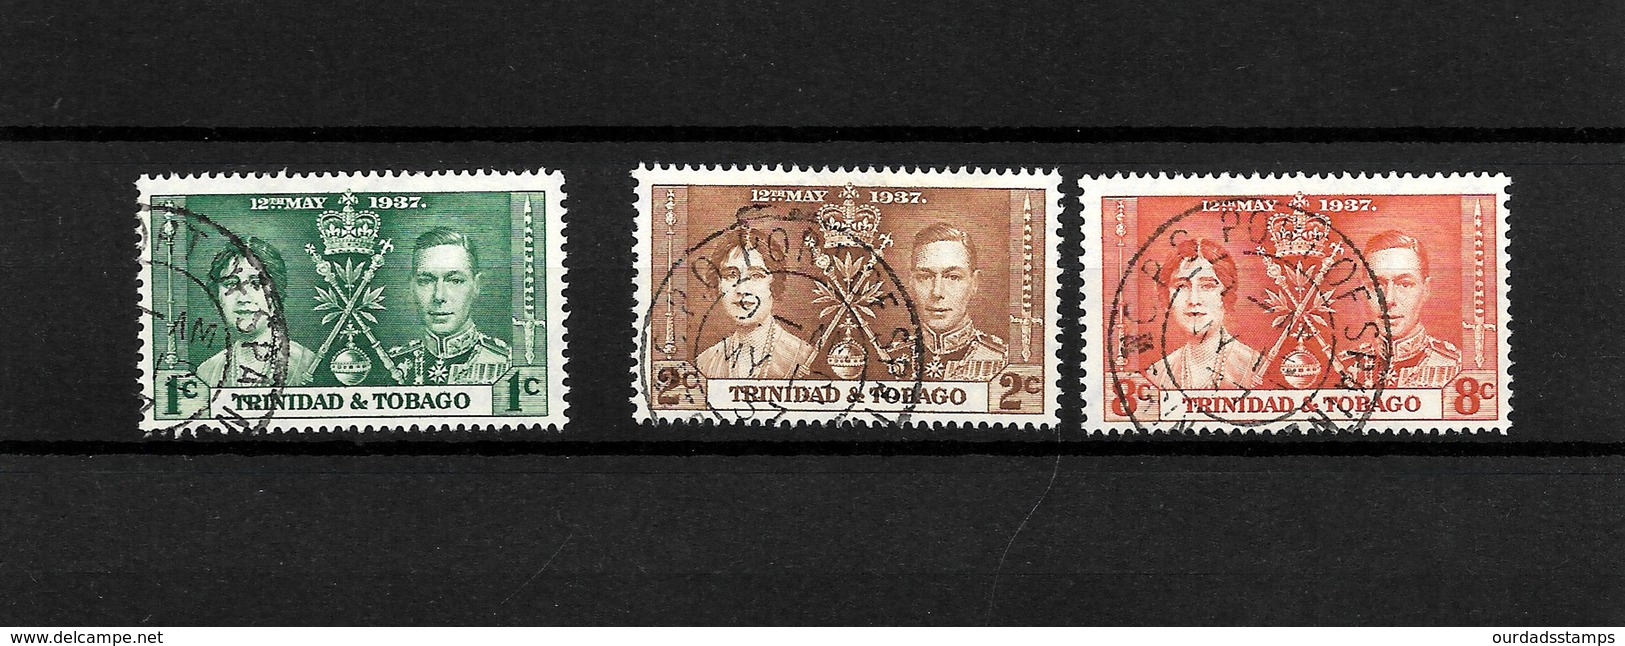 Trinidad & Tobago KGVI 1937 Coronation, Complete Set Used (7129) - Trinidad & Tobago (...-1961)